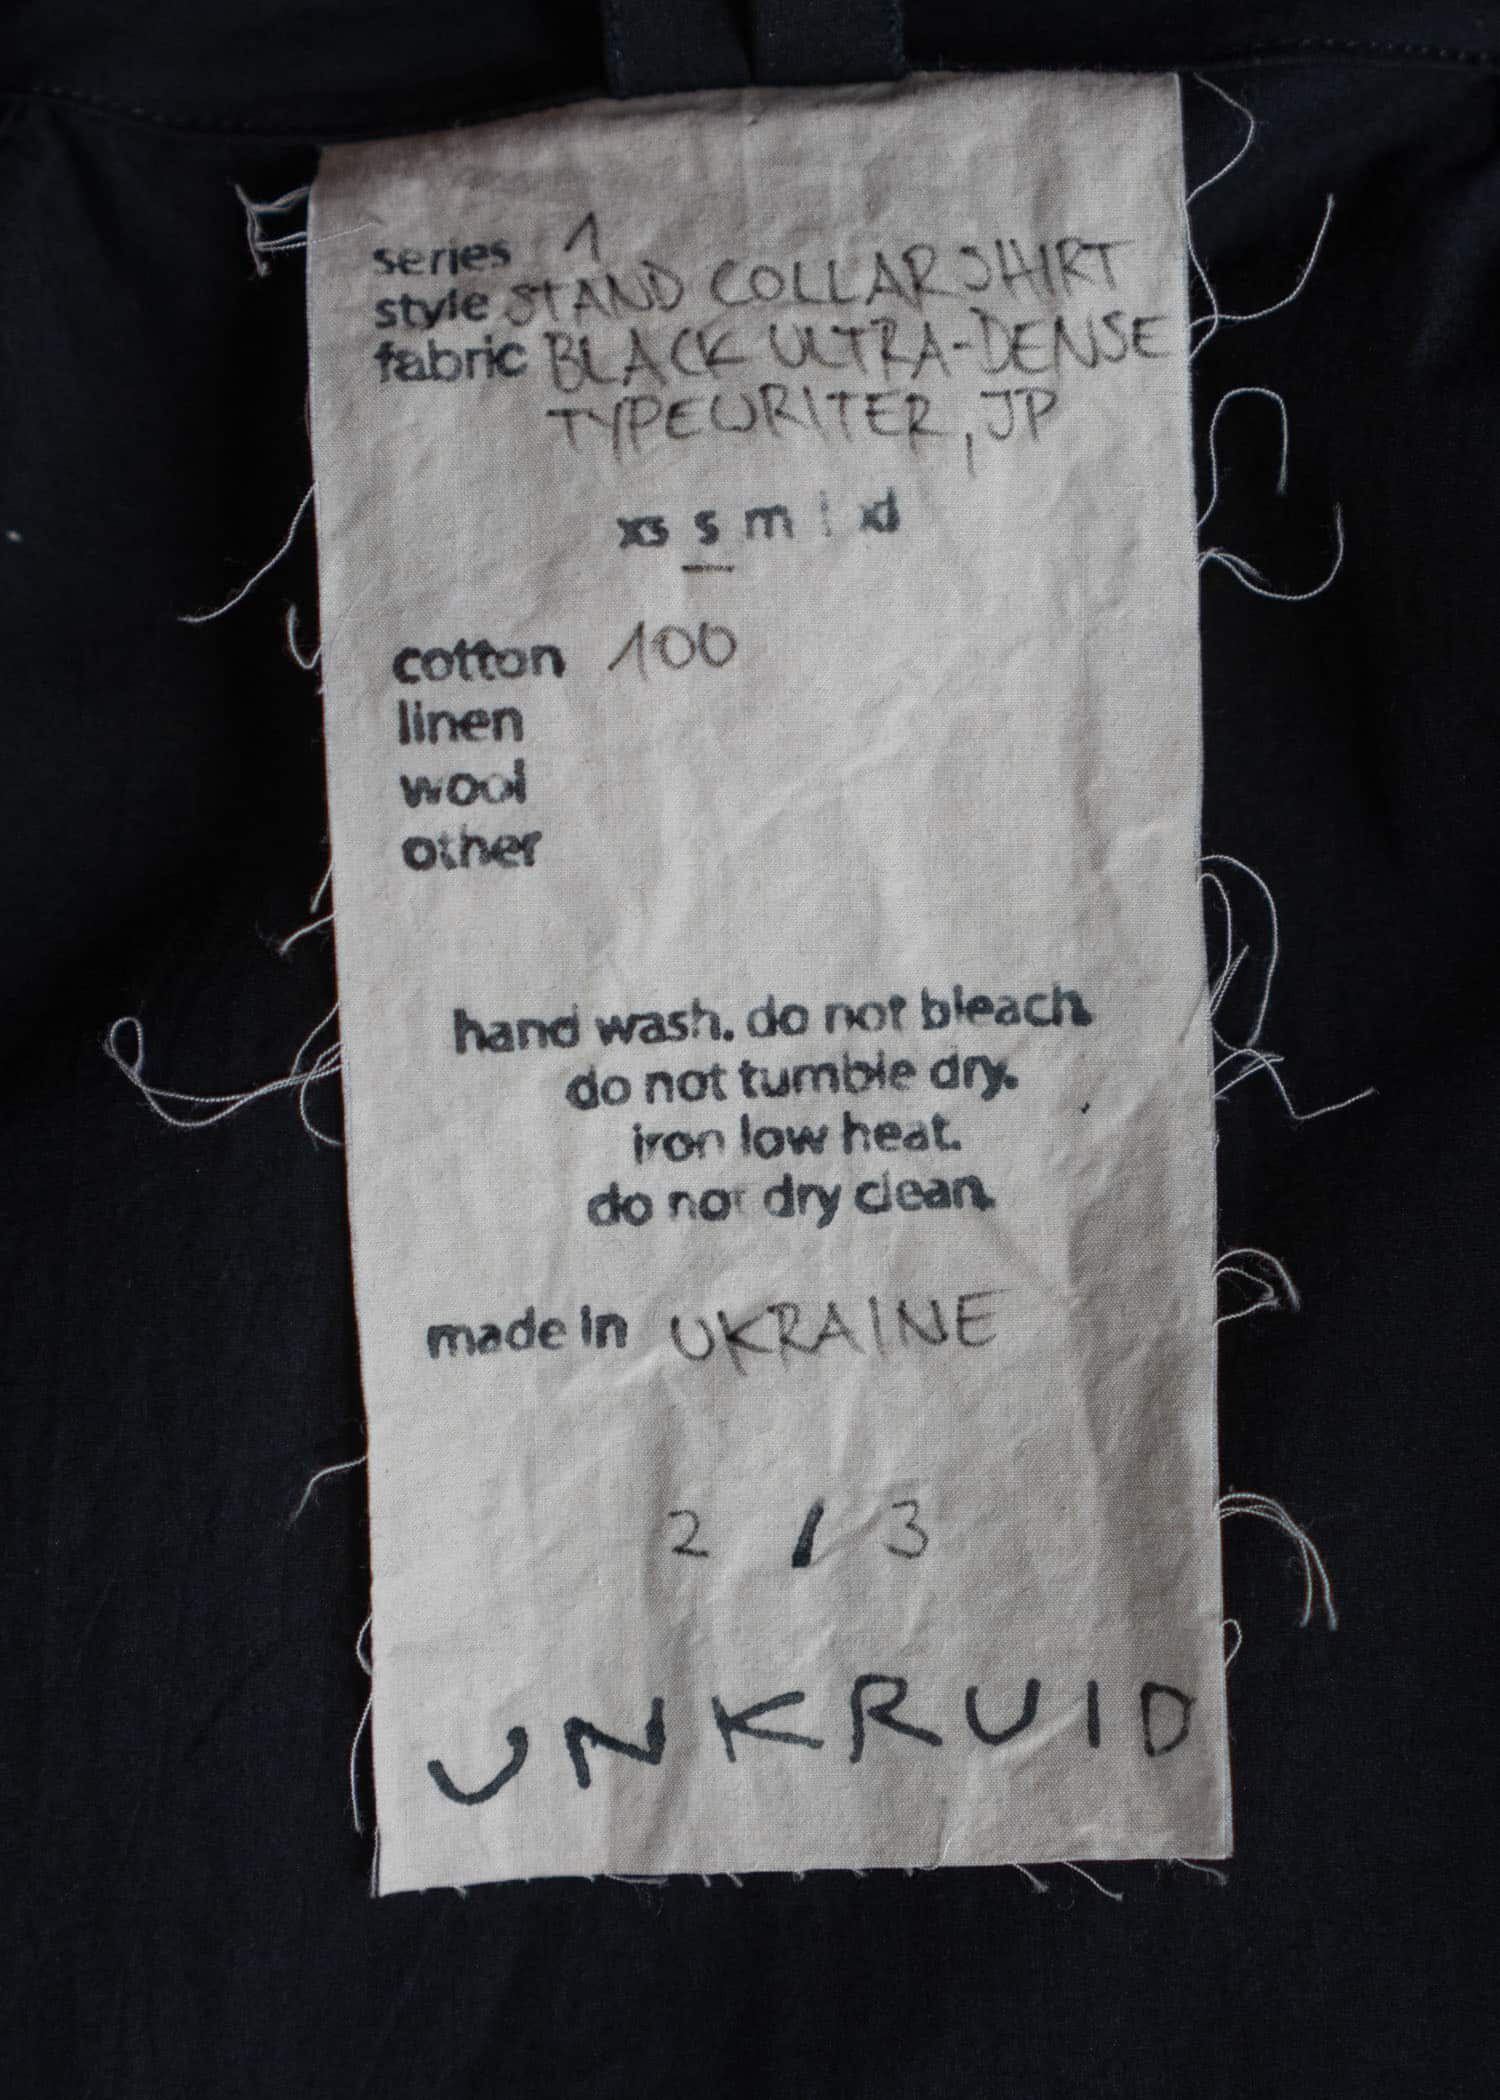 unkruid Stand Collar Shirt Black ultra-dense typewriter